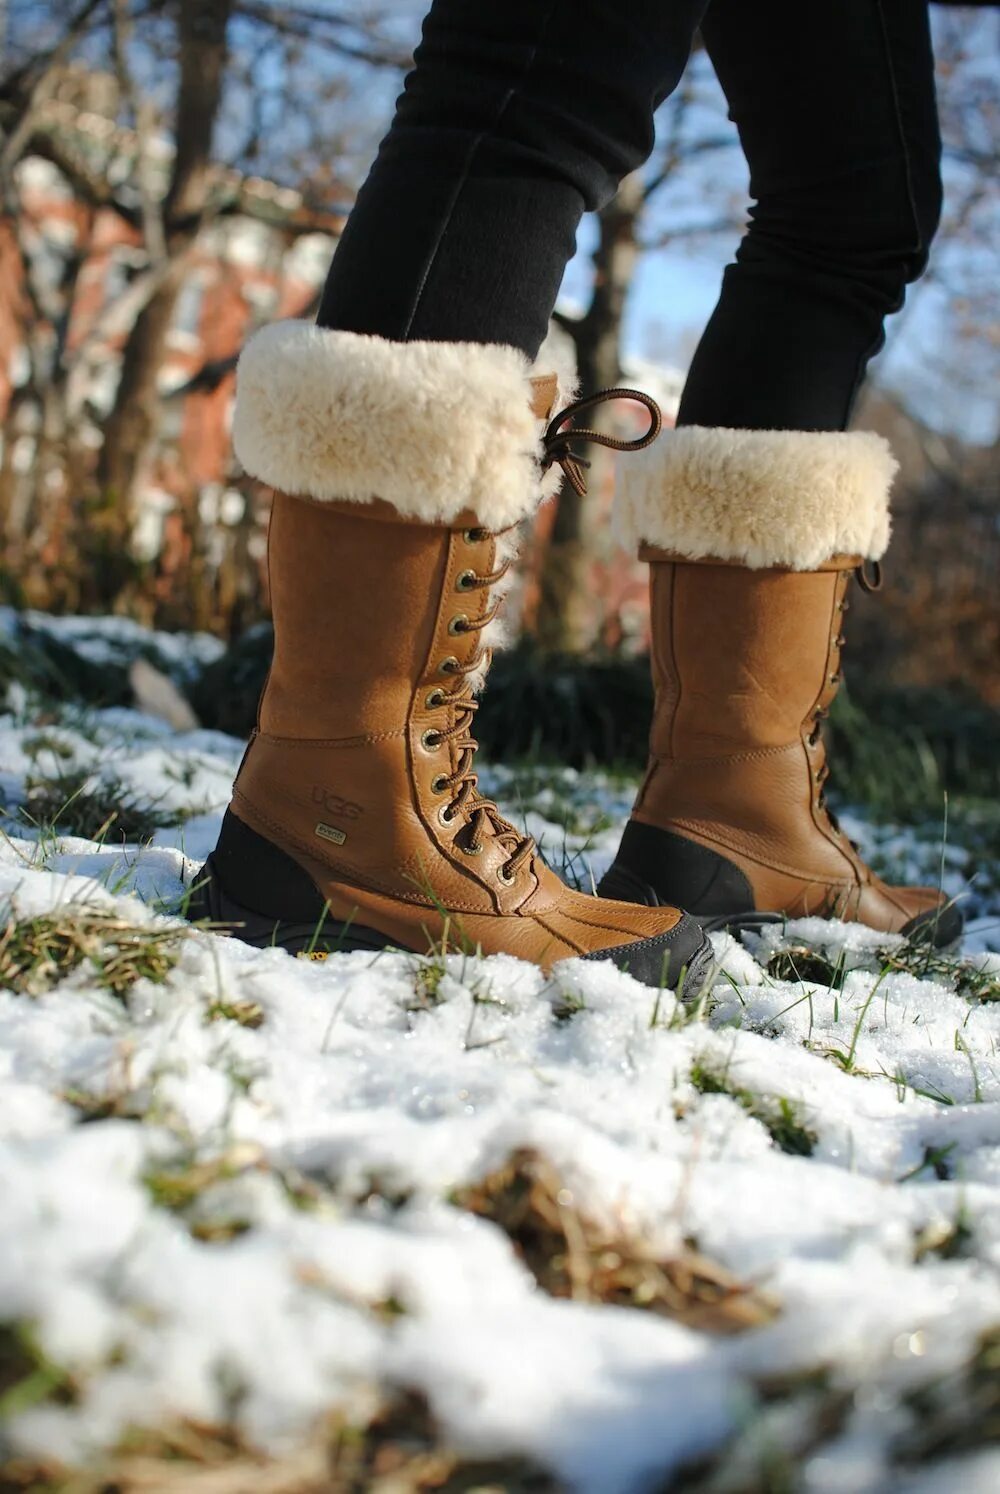 Сайт зимней обуви. Сапоги Snow Boots. Martanni Snow Boots угги. Зимние сапоги UGG Adirondack. Ботинки обувь женская Винтер зимние.